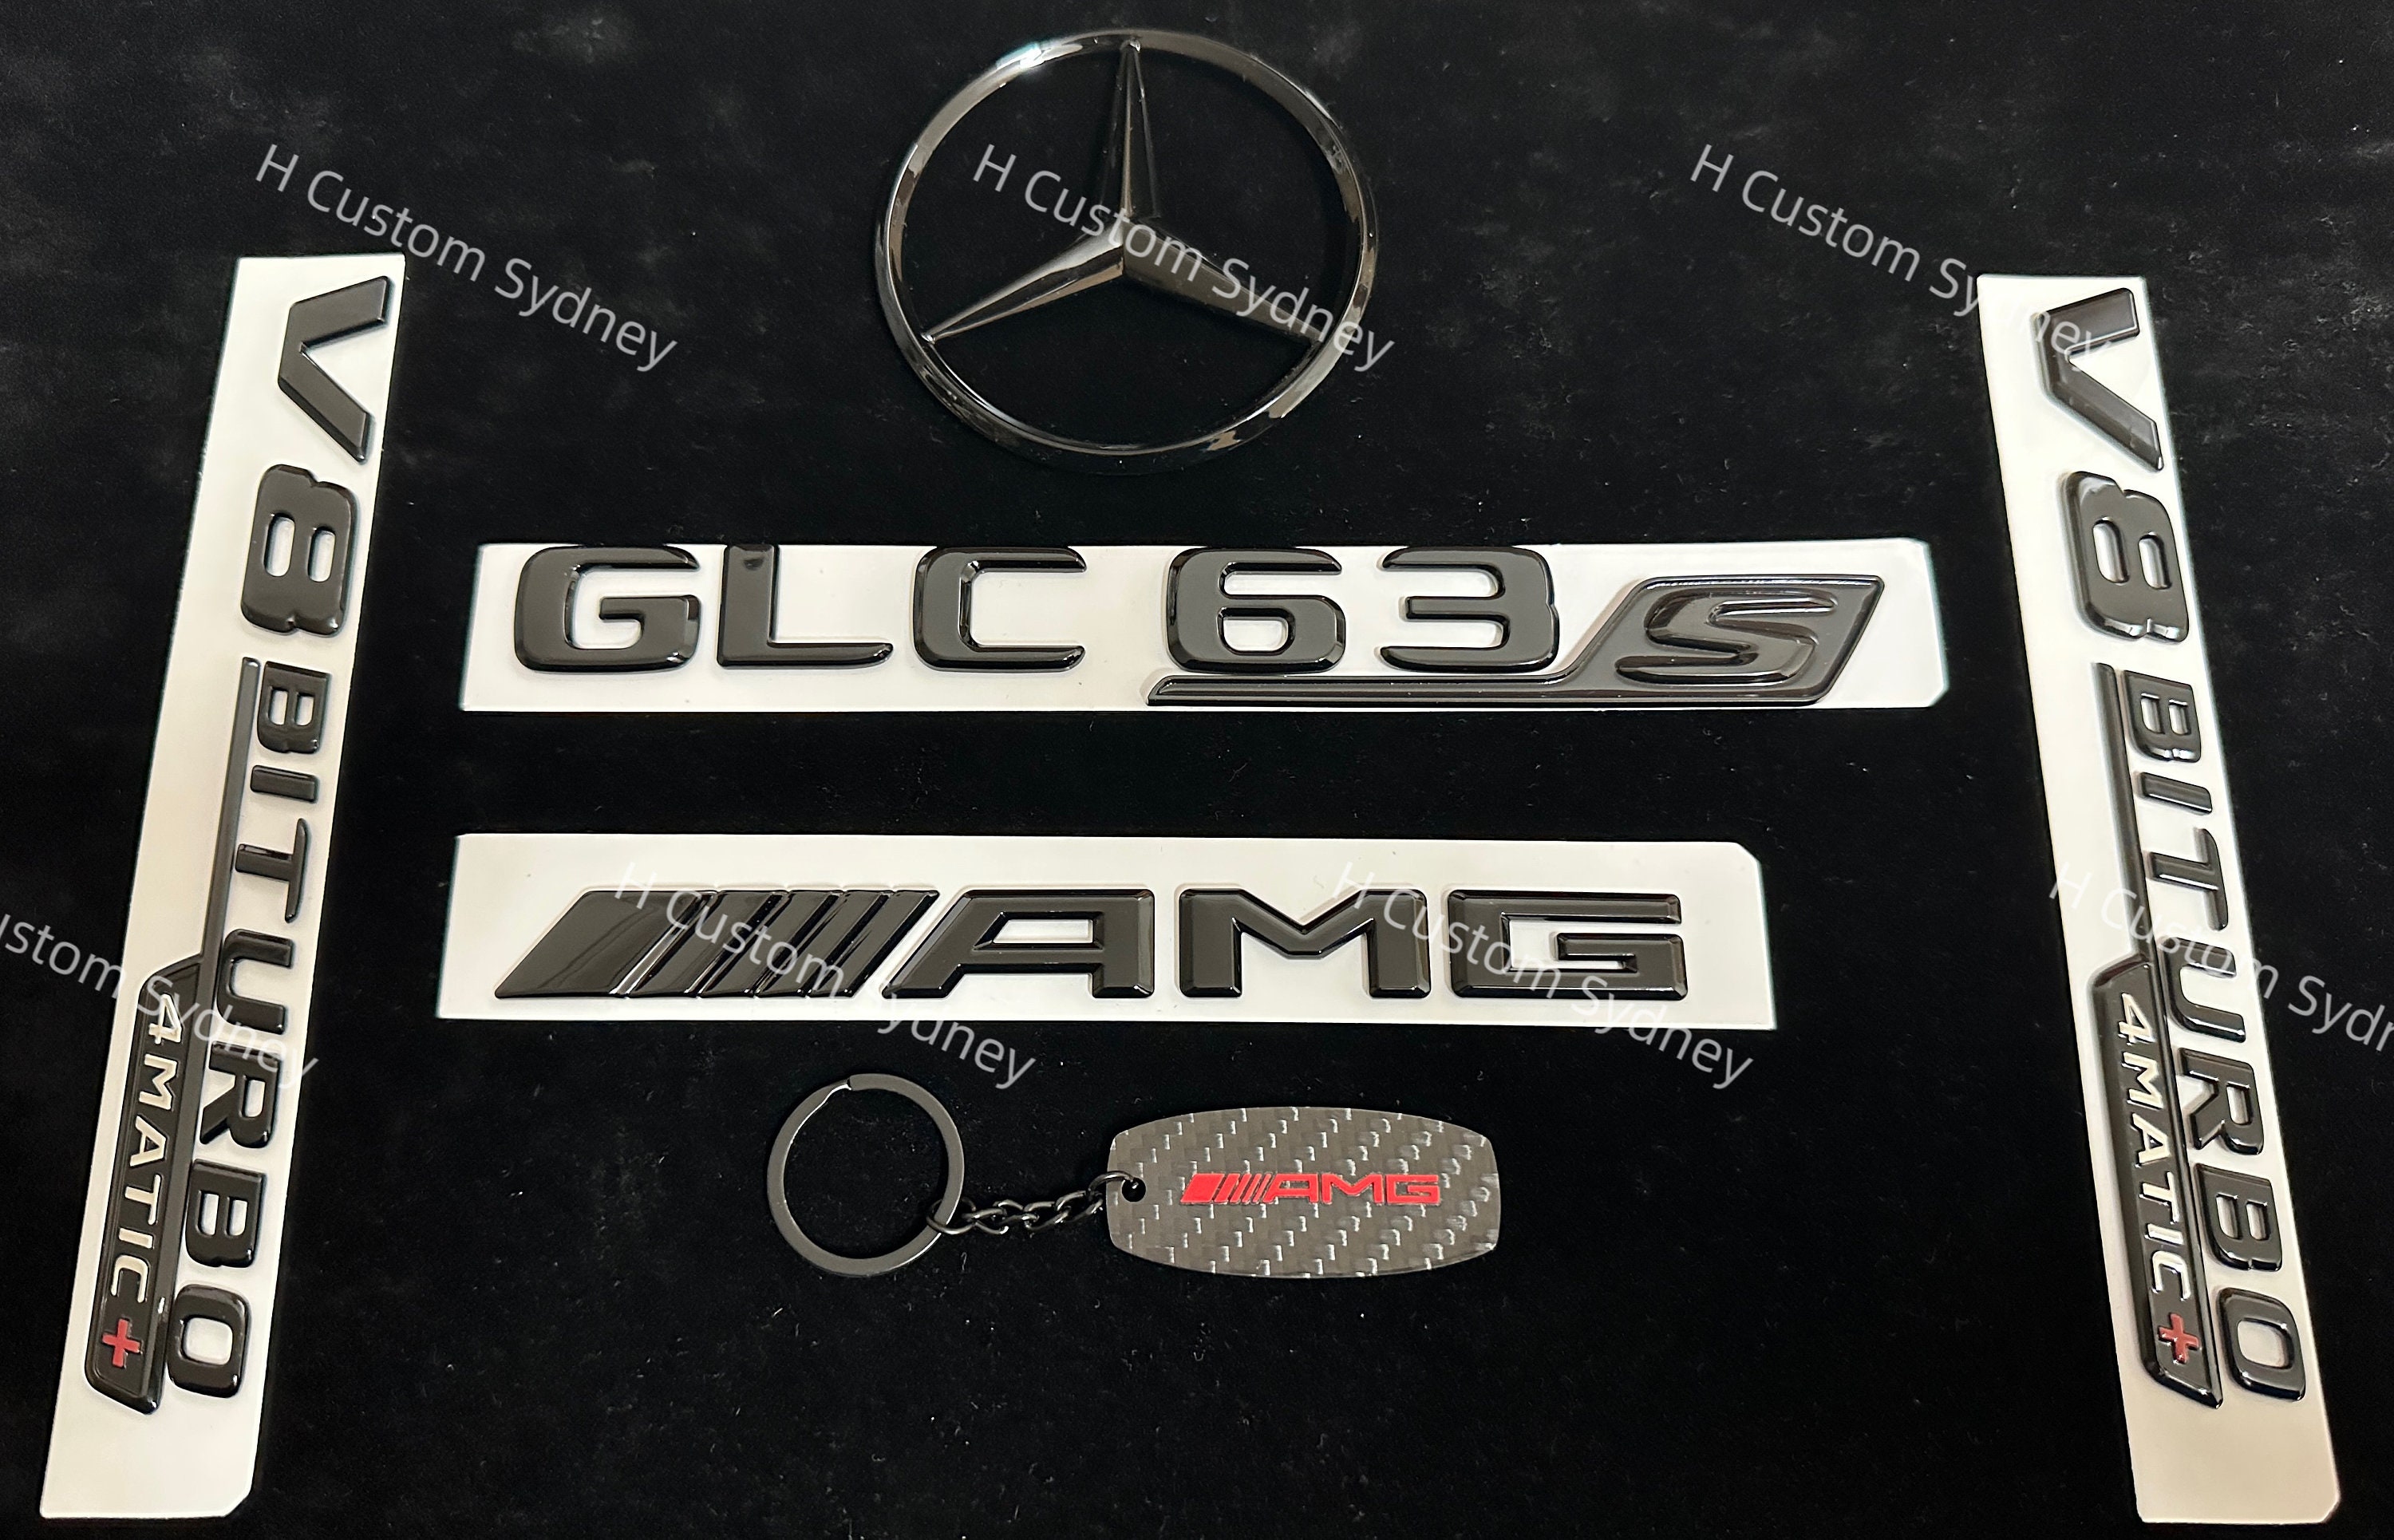 2015 Glossy Black Letters V8 Biturbo Emblem for Mercedes Benz AMG